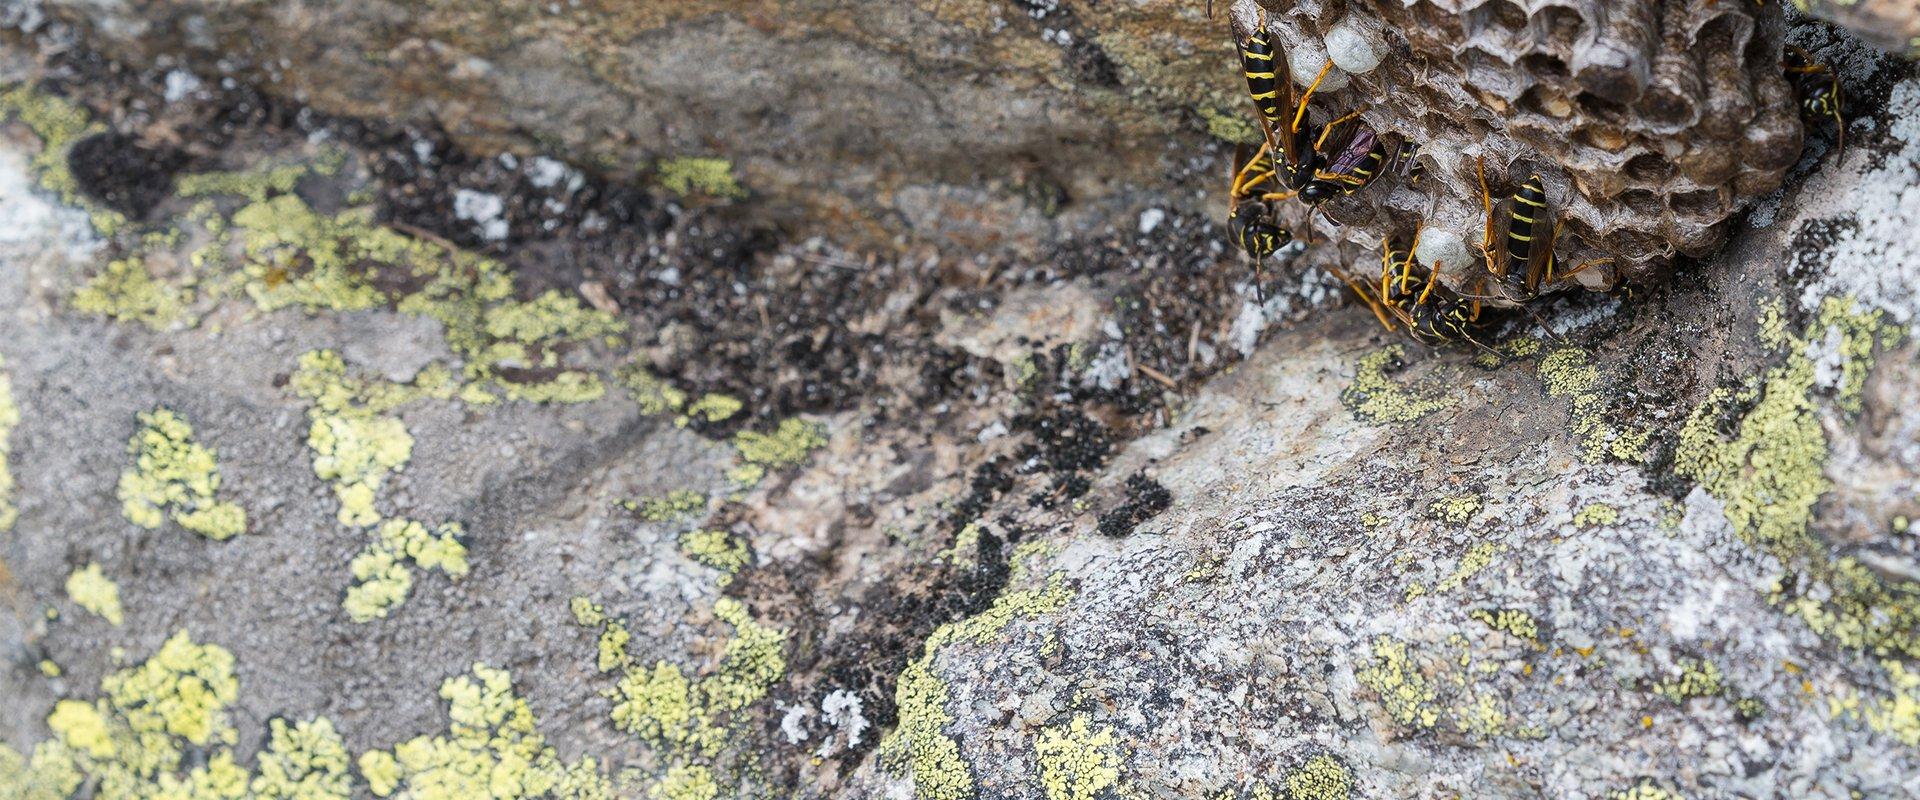 wasps in a nest under rocks